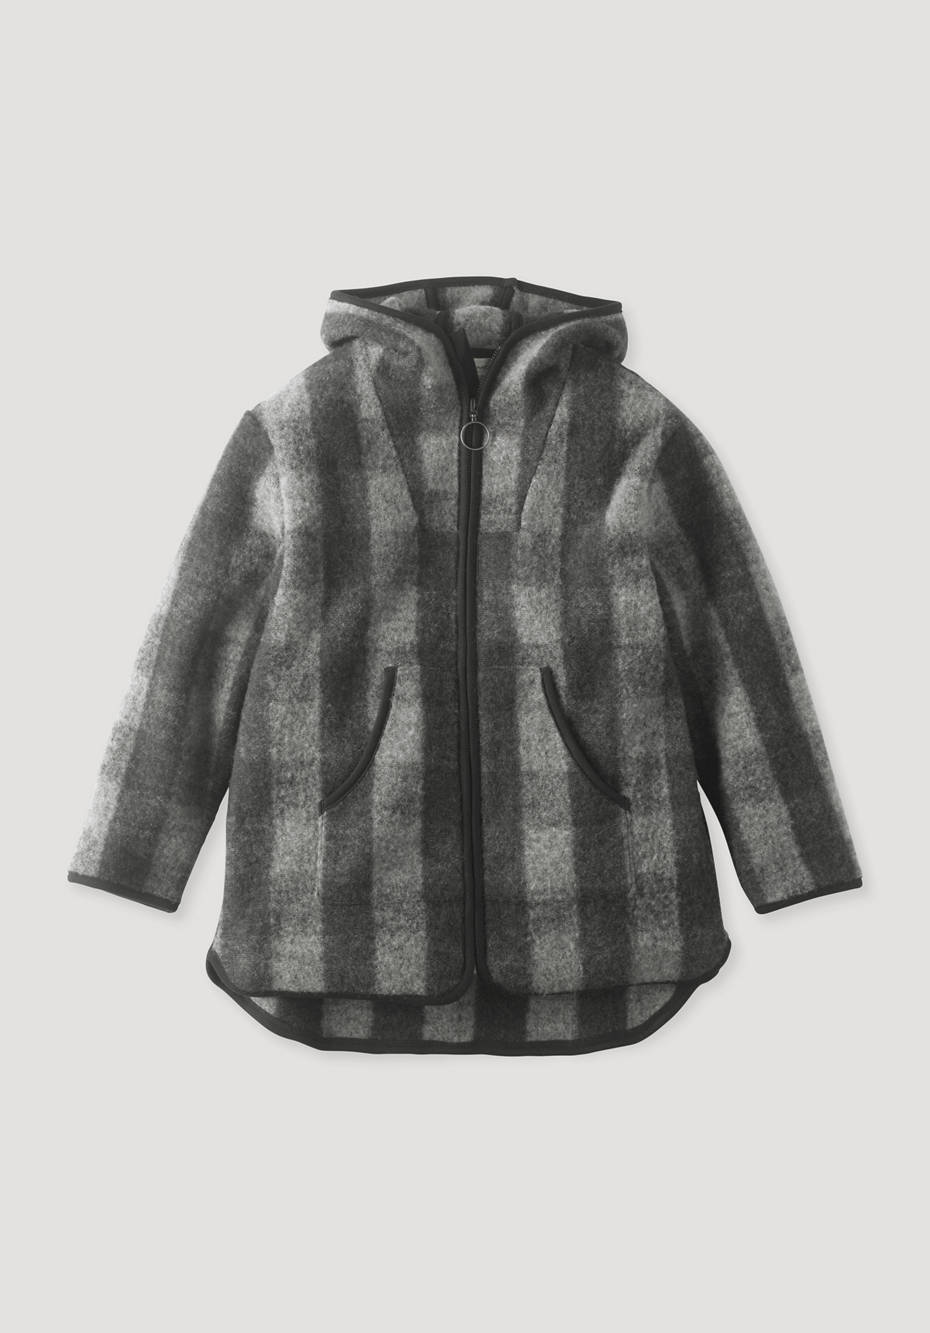 Short coat made from pure organic merino wool